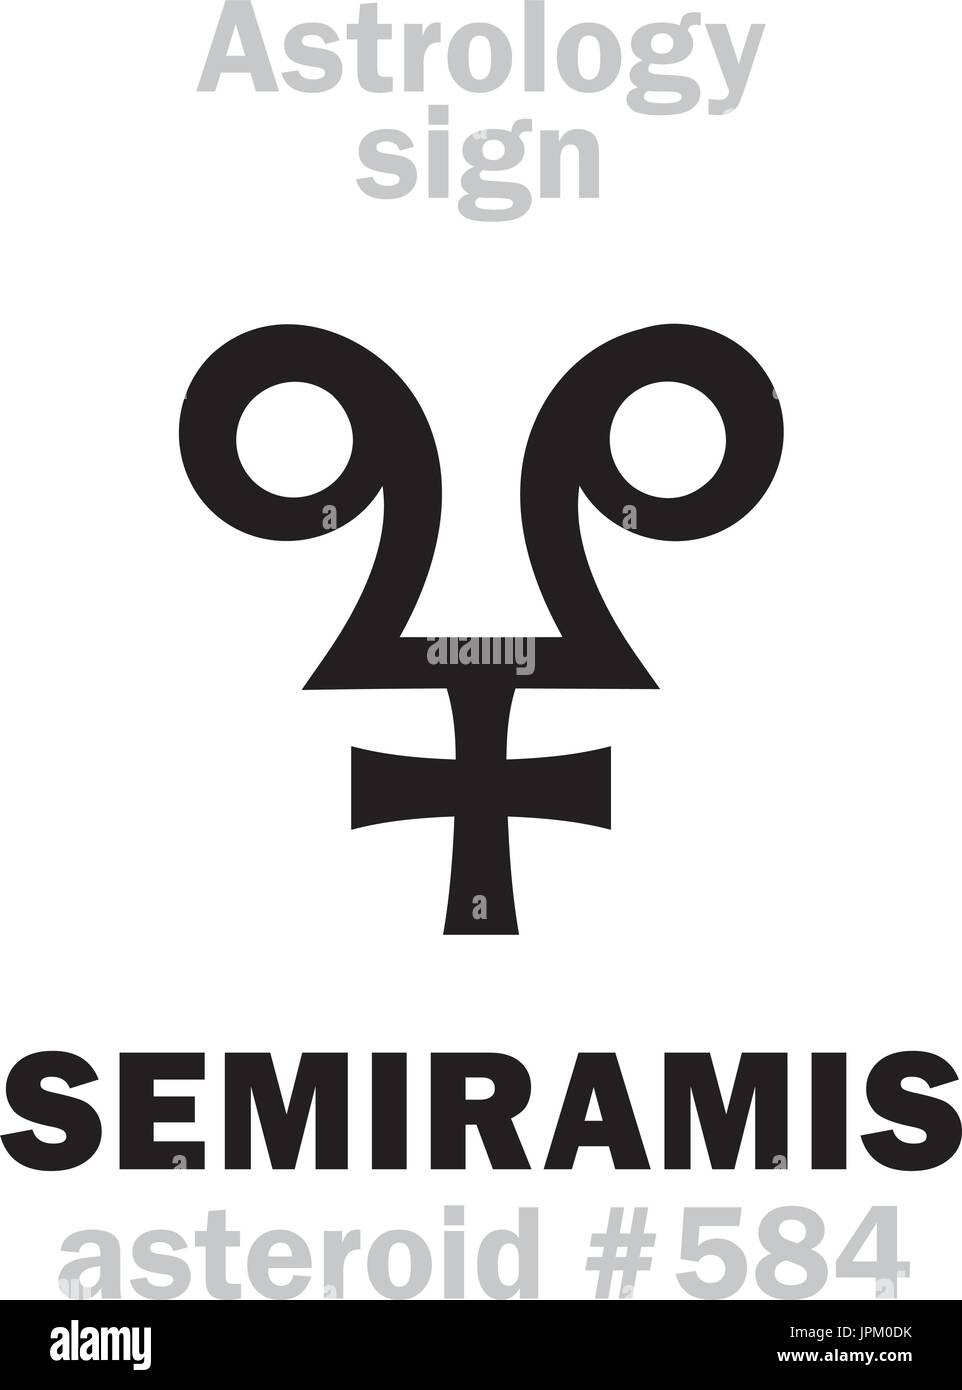 Astrologie-Alphabet: SEMIRAMIS, Asteroid #584. Hieroglyphen Charakter Zeichen (einzelnes Symbol). Stock Vektor